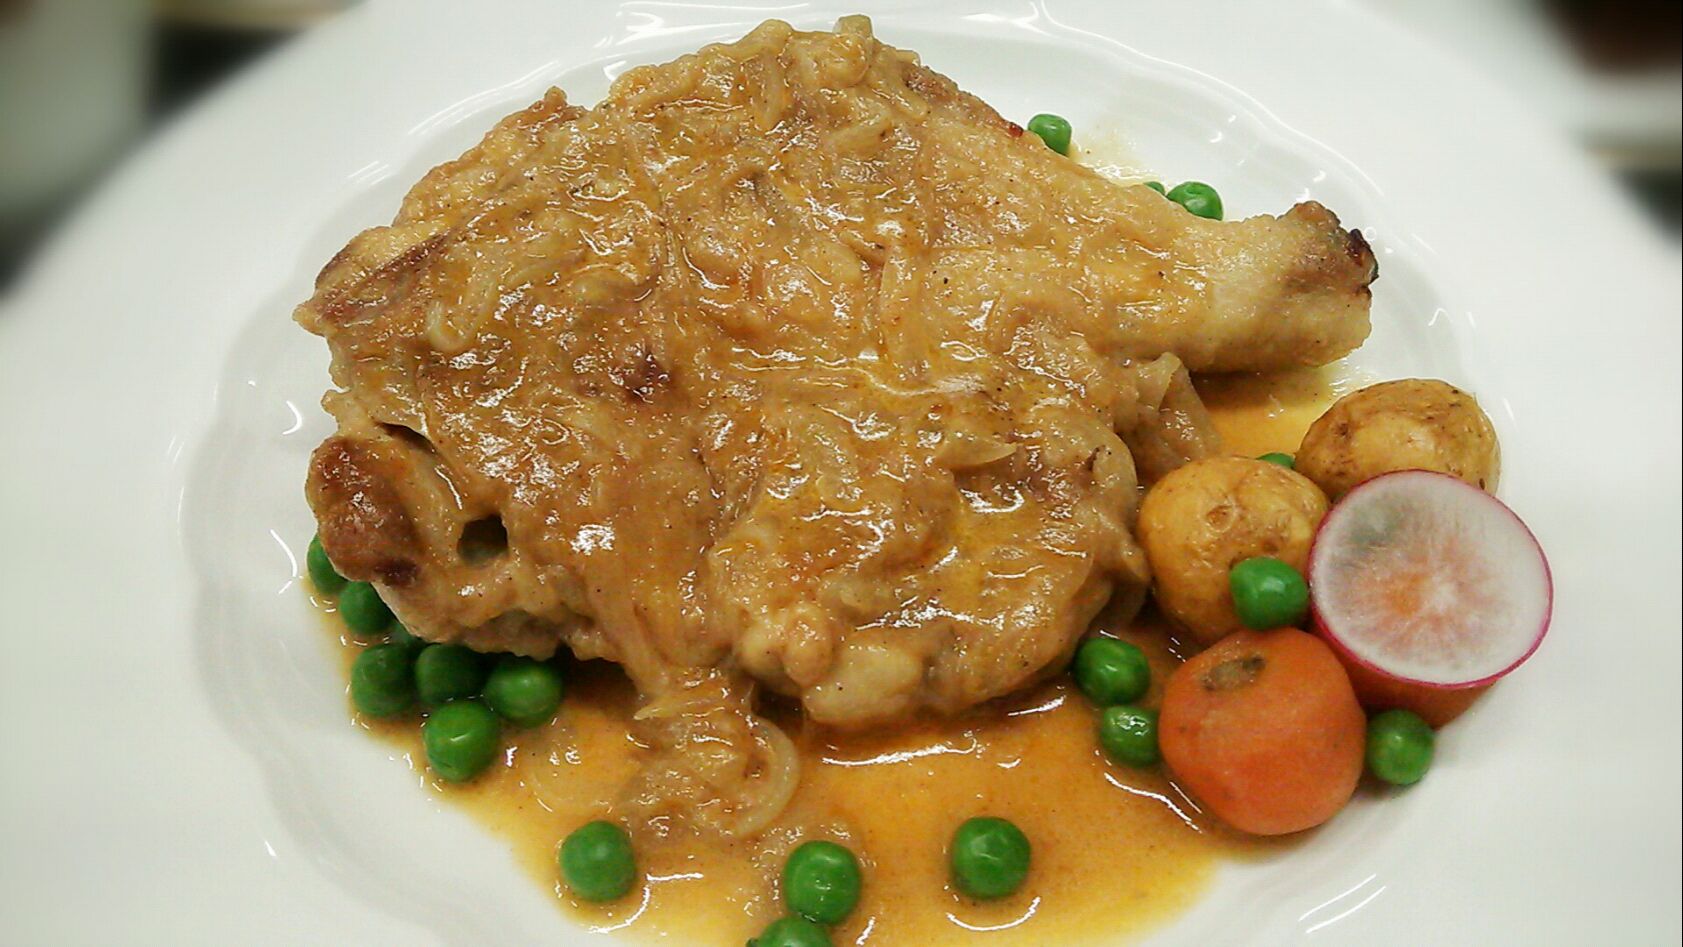 今日は、フランス料理の古典Poulet à la Stanley！
鶏もも肉のスタンリー風